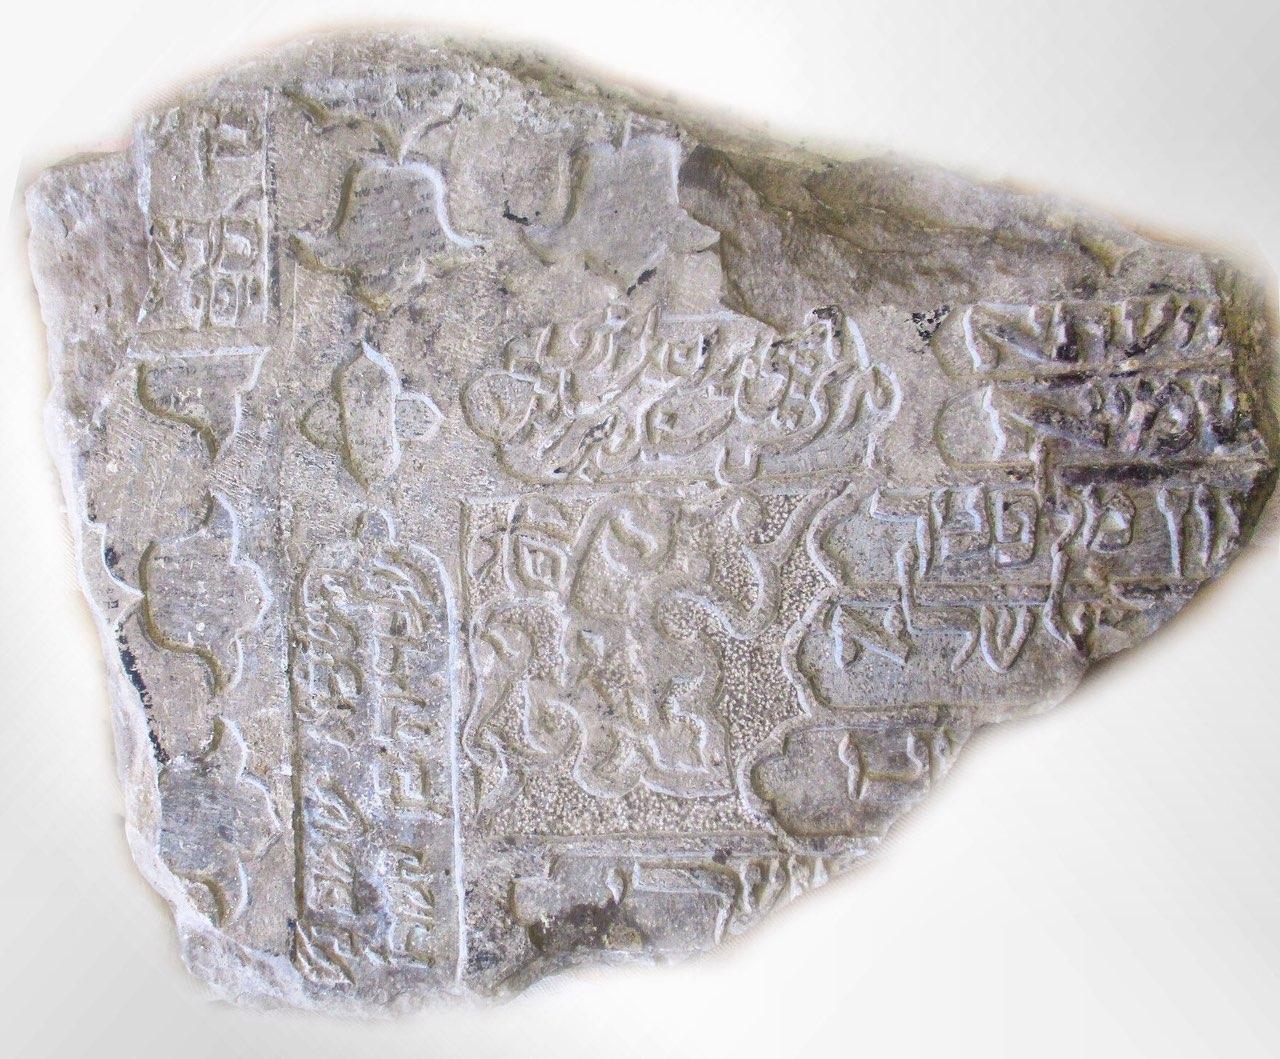 کشف دو قطعه سنگ نوشته سرقتی از مجموعه تاریخی« استر خاتون» شهرستان فلاورجان